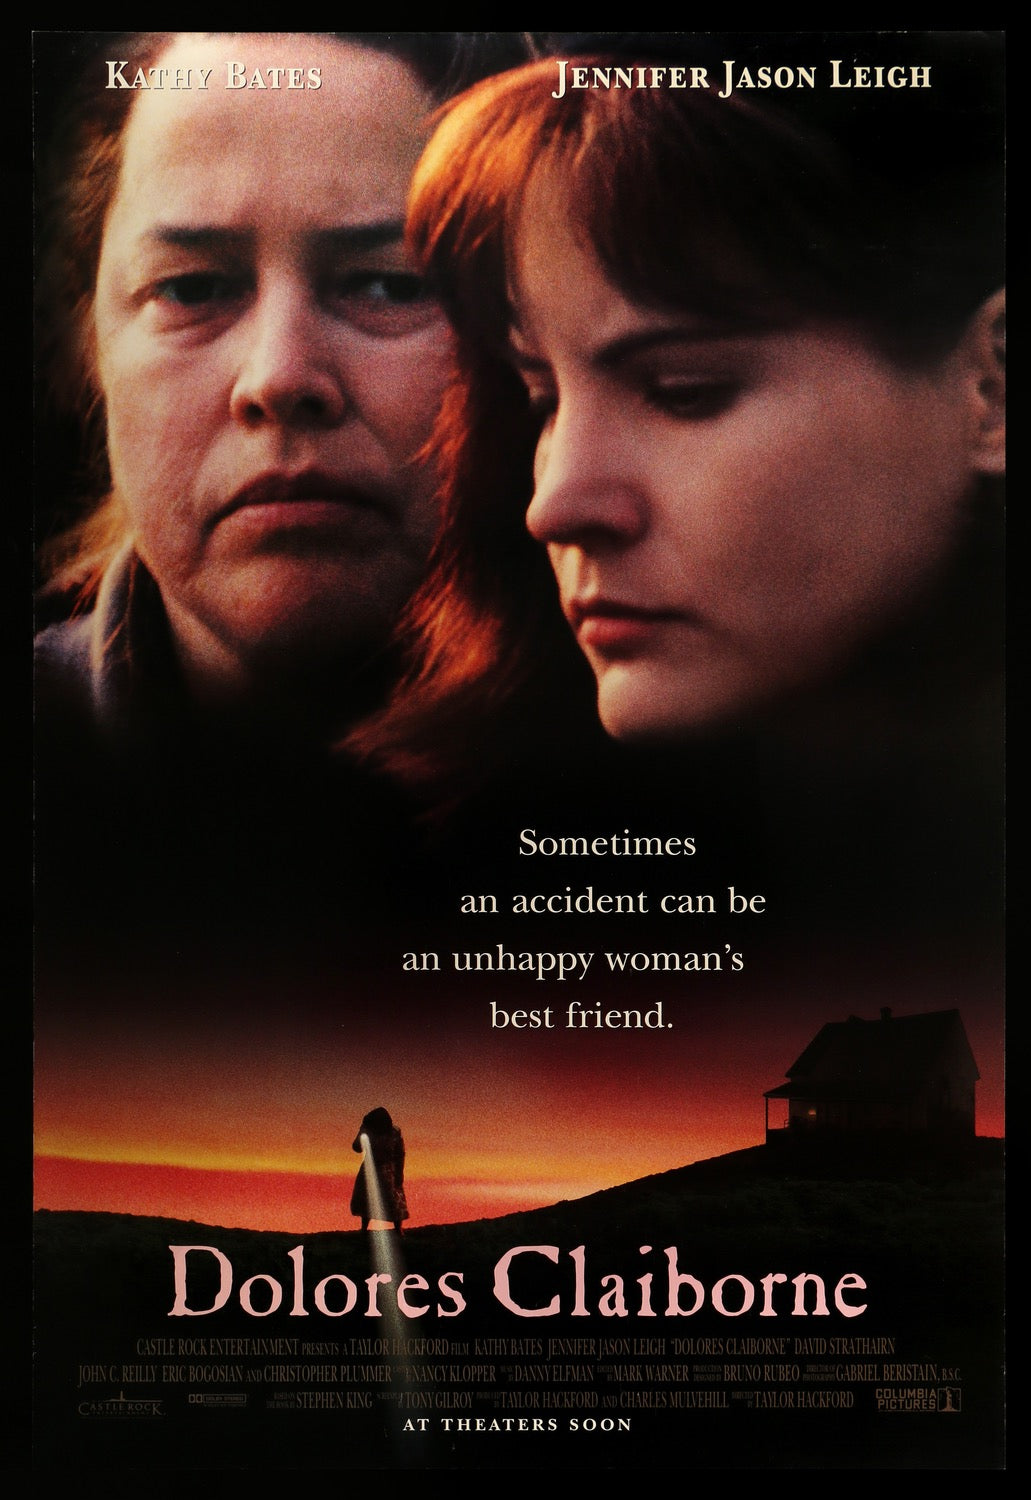 Dolores Claiborne (1995) original movie poster for sale at Original Film Art